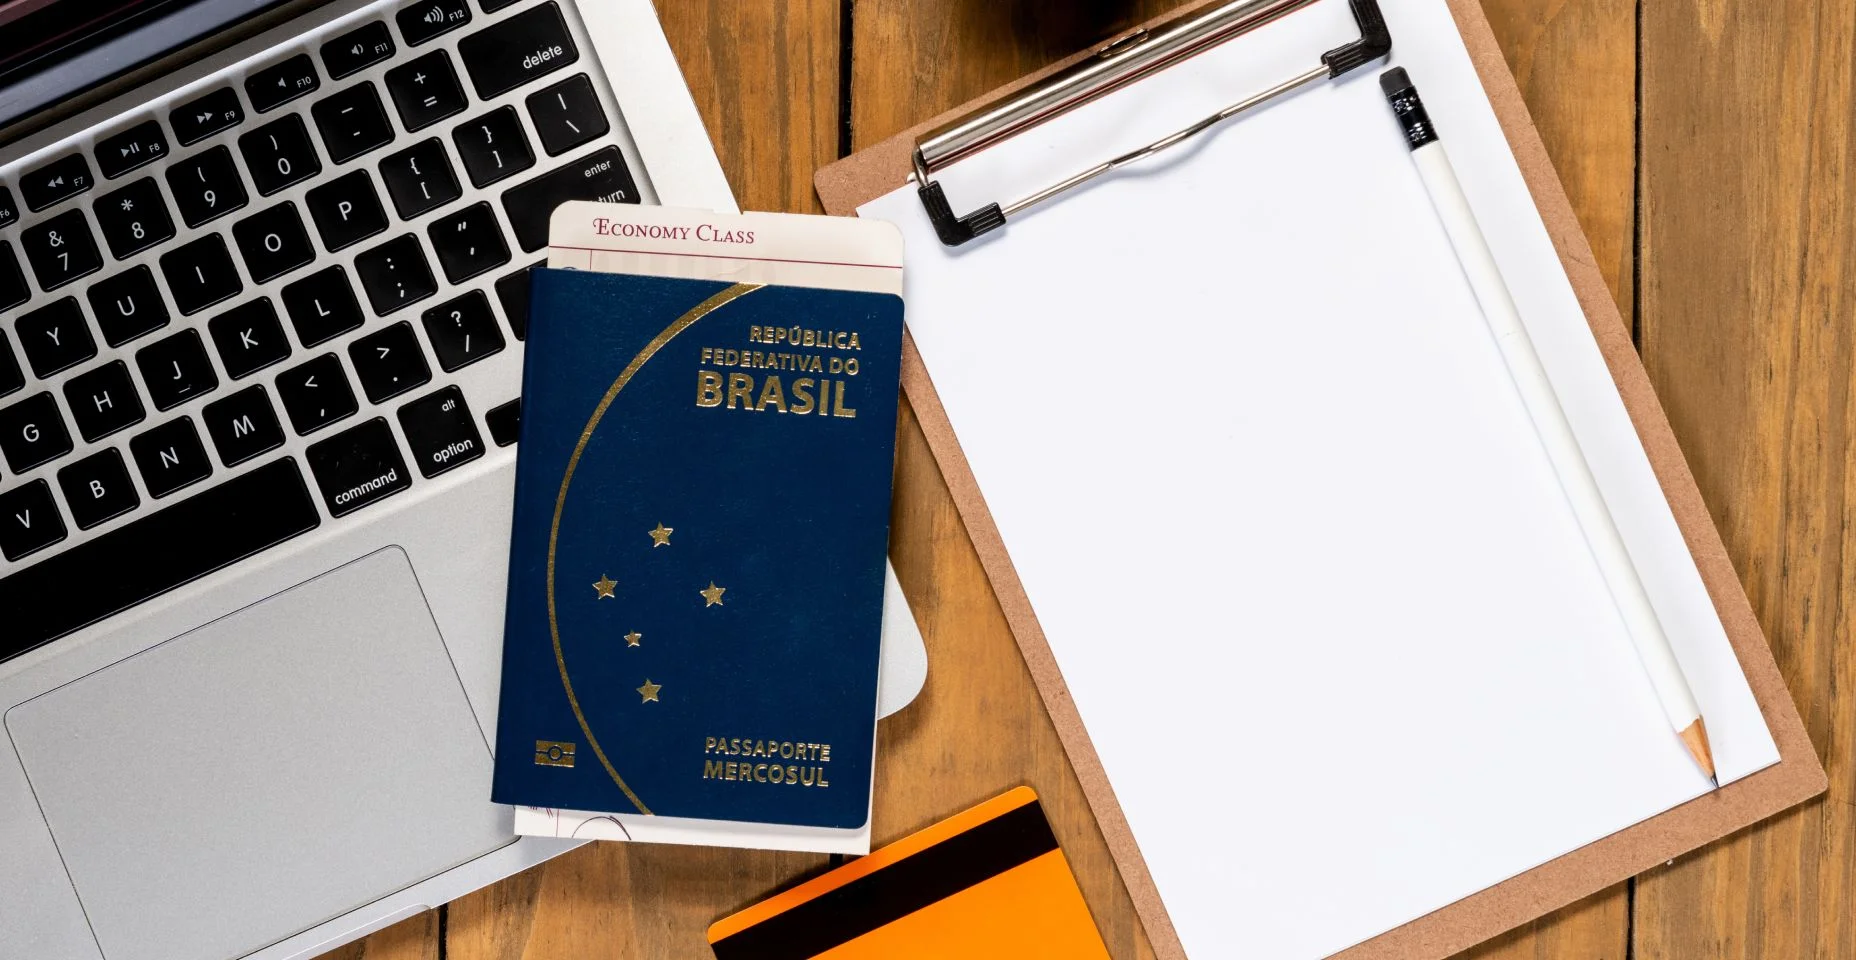 Passaporte brasileiro e passagem no computador na mesa de madeira. Bloco de notas em branco para planejamento de viagens.